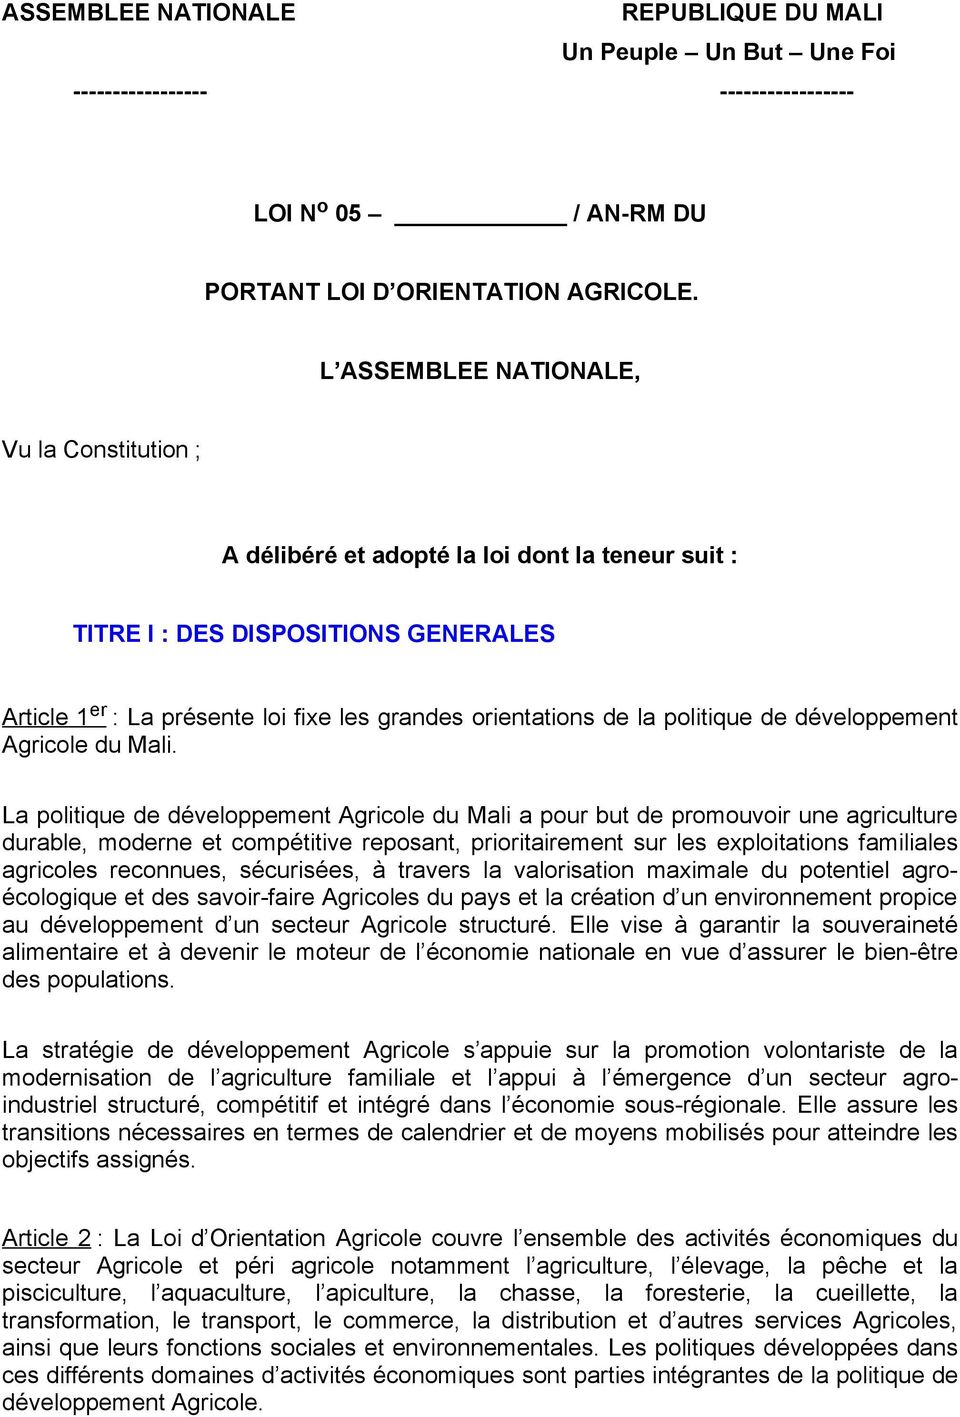 politique de développement Agricole du Mali.